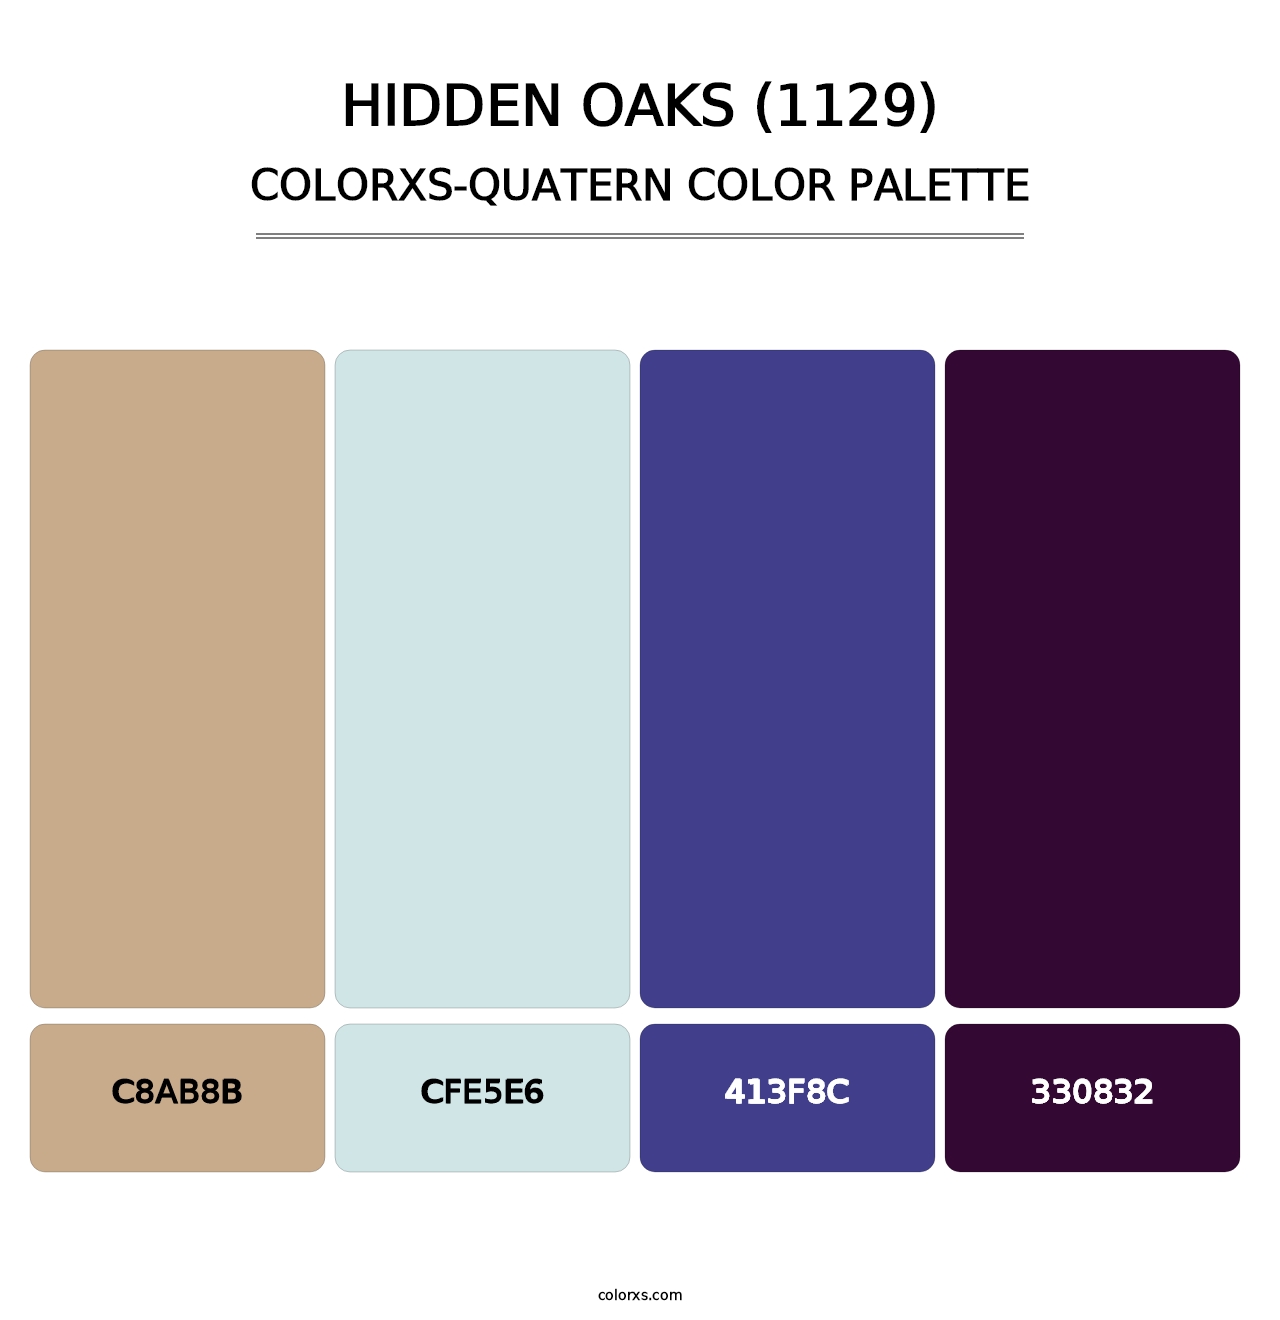 Hidden Oaks (1129) - Colorxs Quatern Palette